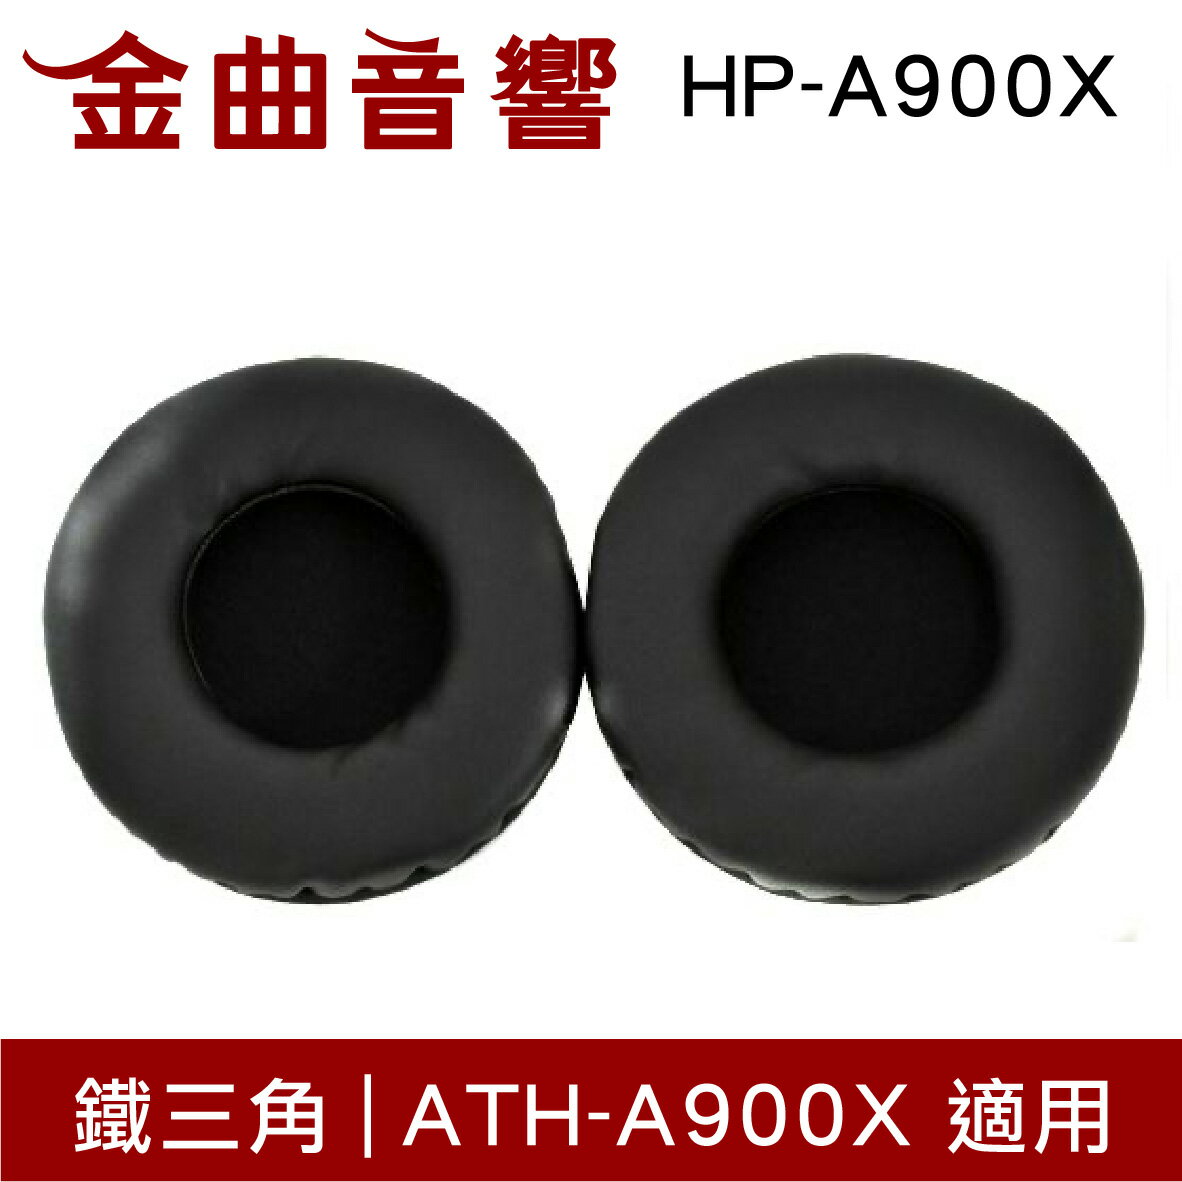 鐵三角 HP-A900X 替換耳罩 一對 ATH-A900X 適用 | 金曲音響